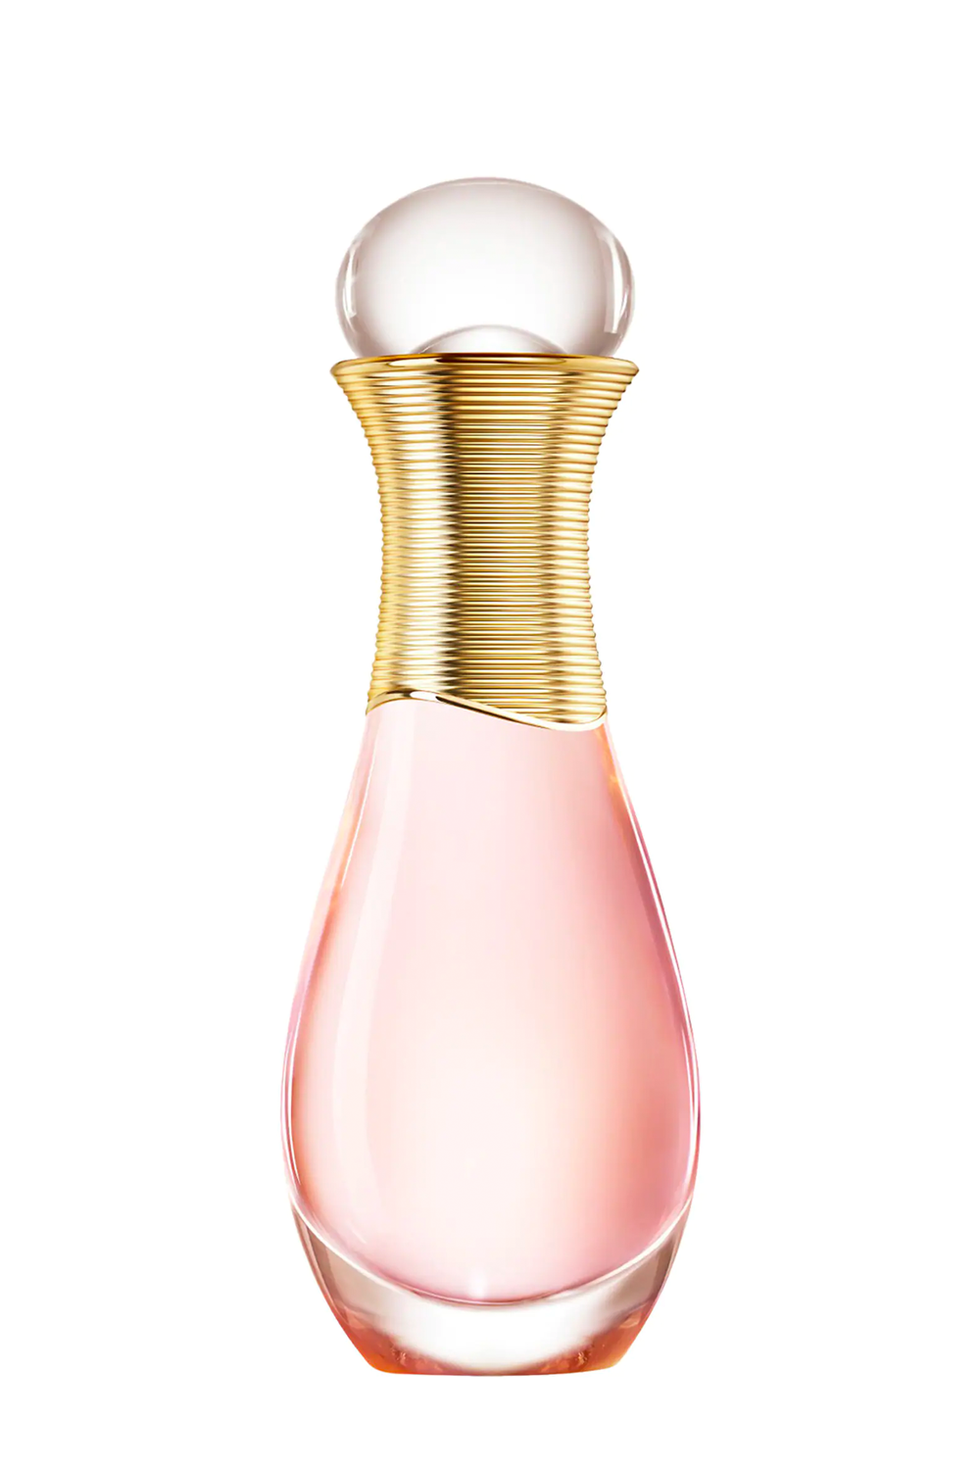 Louis Vuitton Eau de Parfums for Valentine's Day 2022